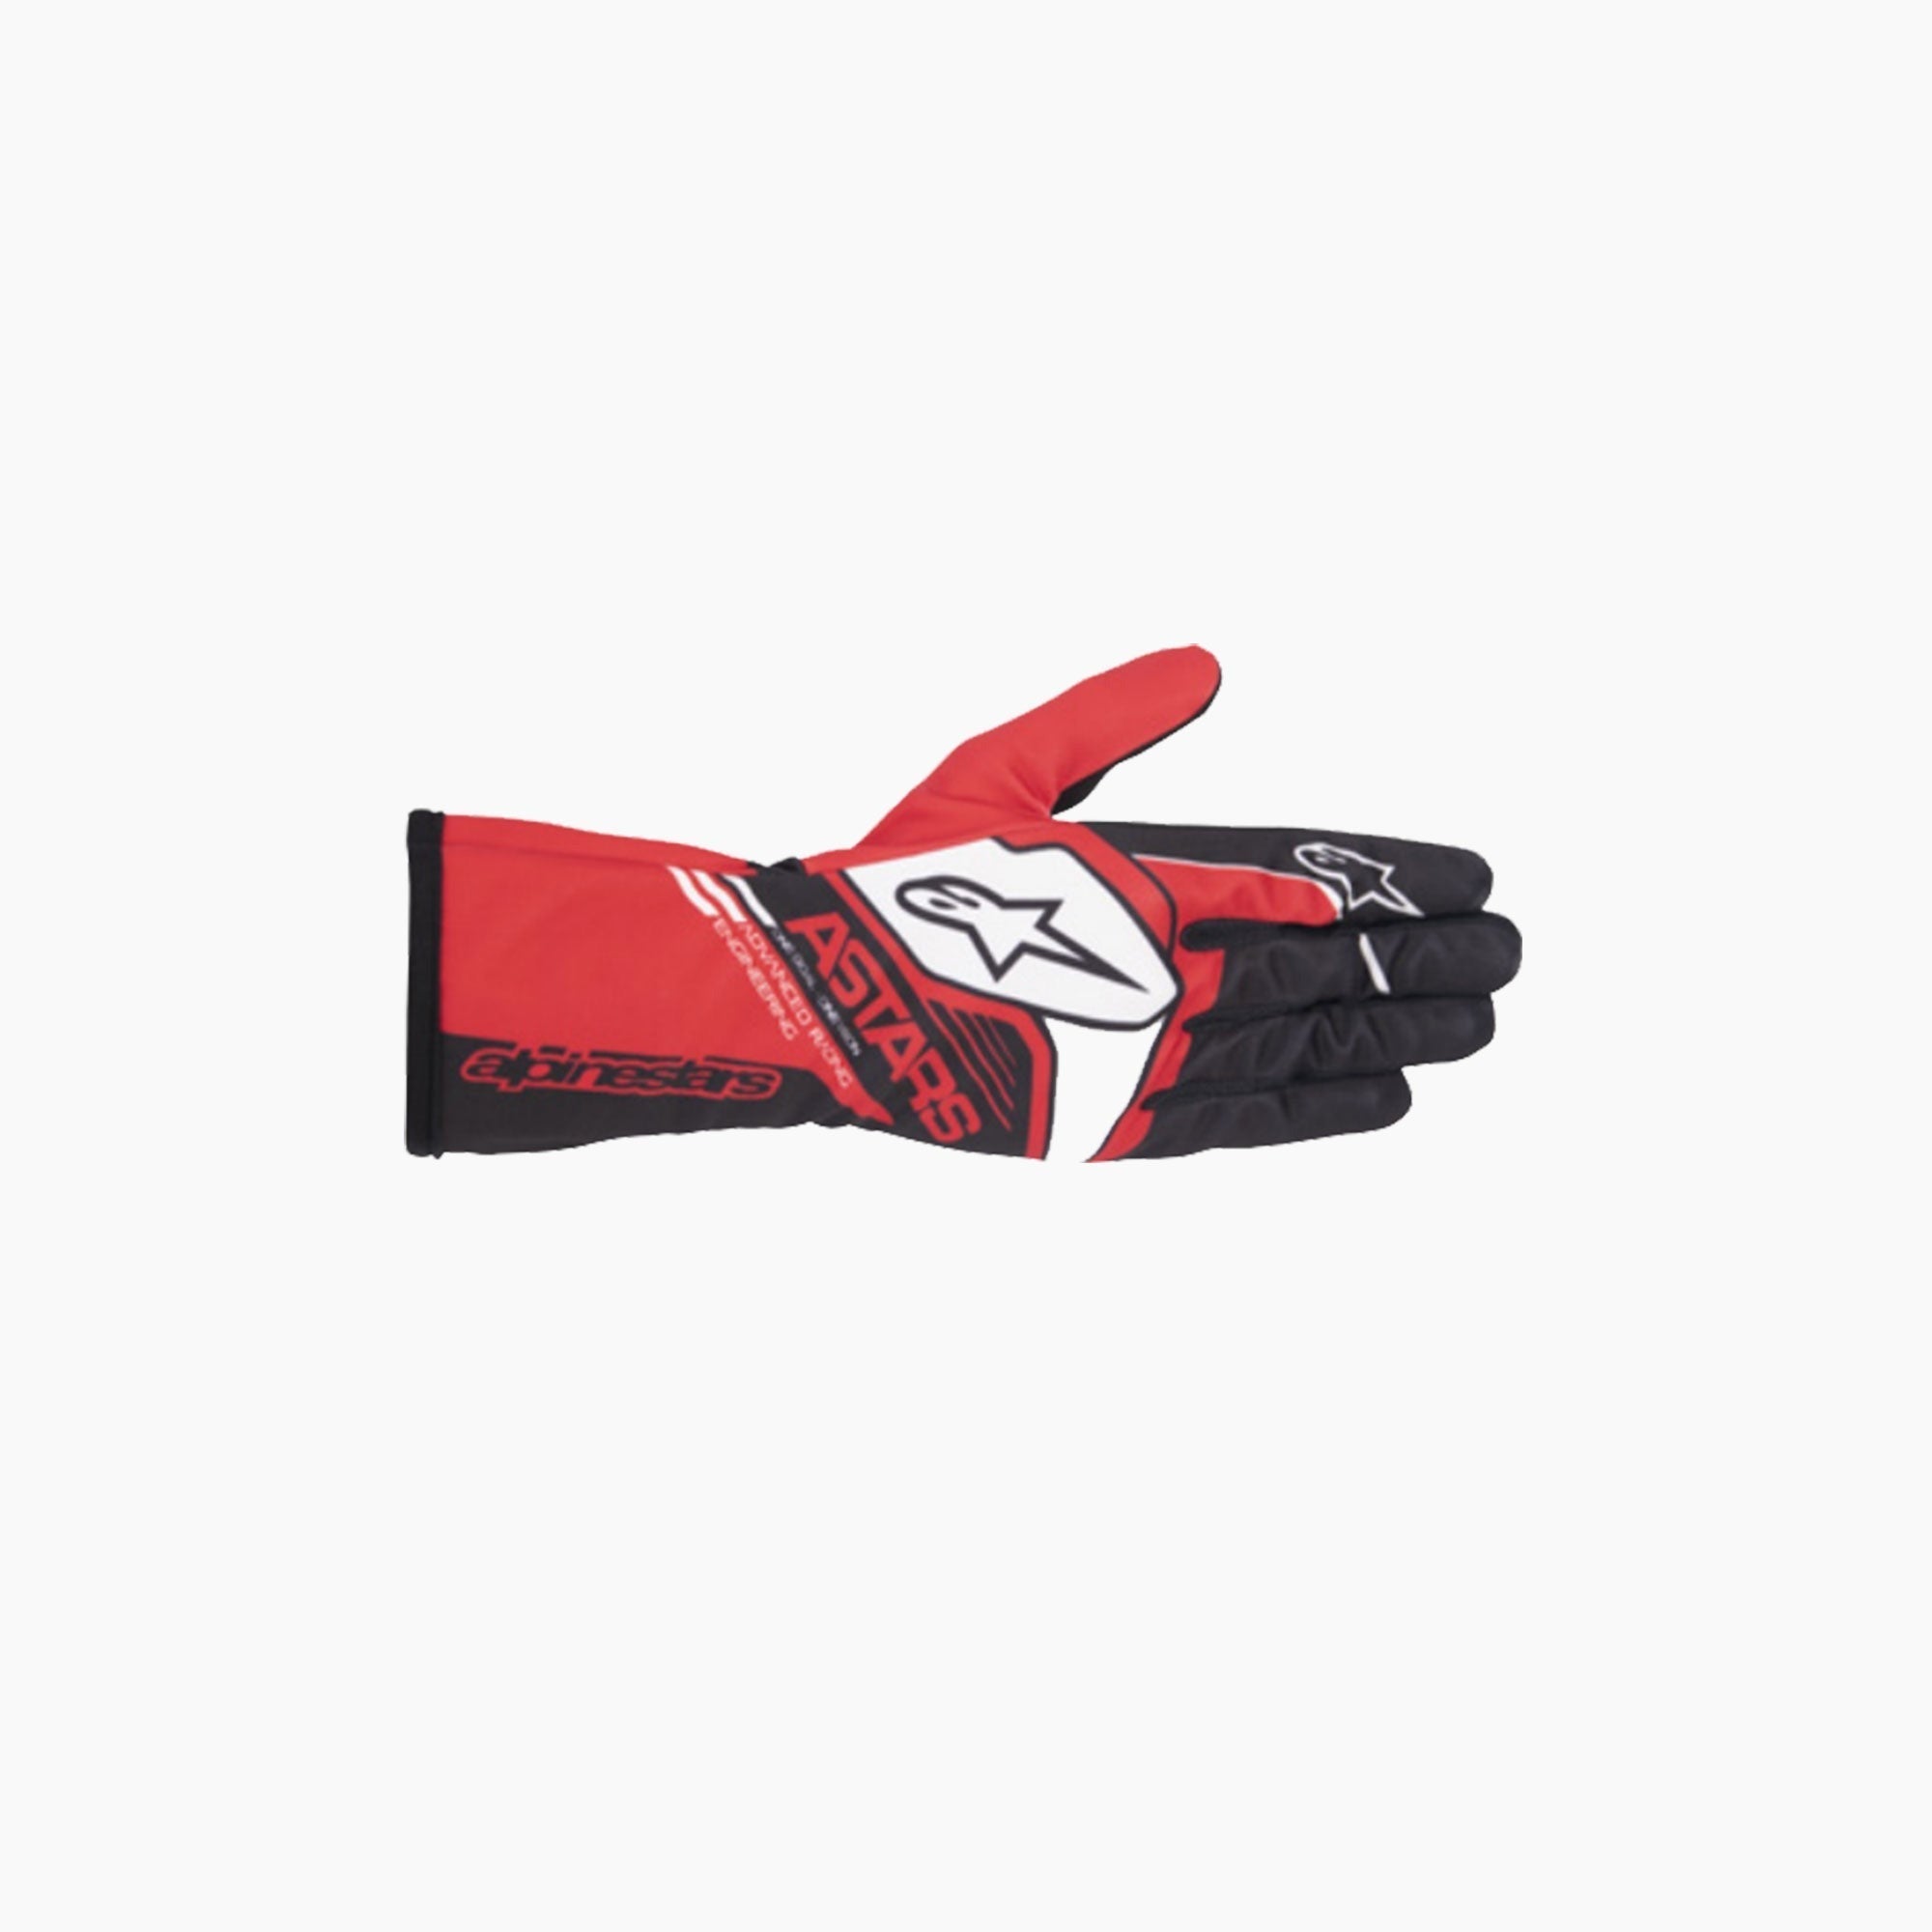 Alpinestars | Tech-1 K Race V2 Corp Youth Karting Gloves-Karting Gloves-Alpinestars-gpx-store